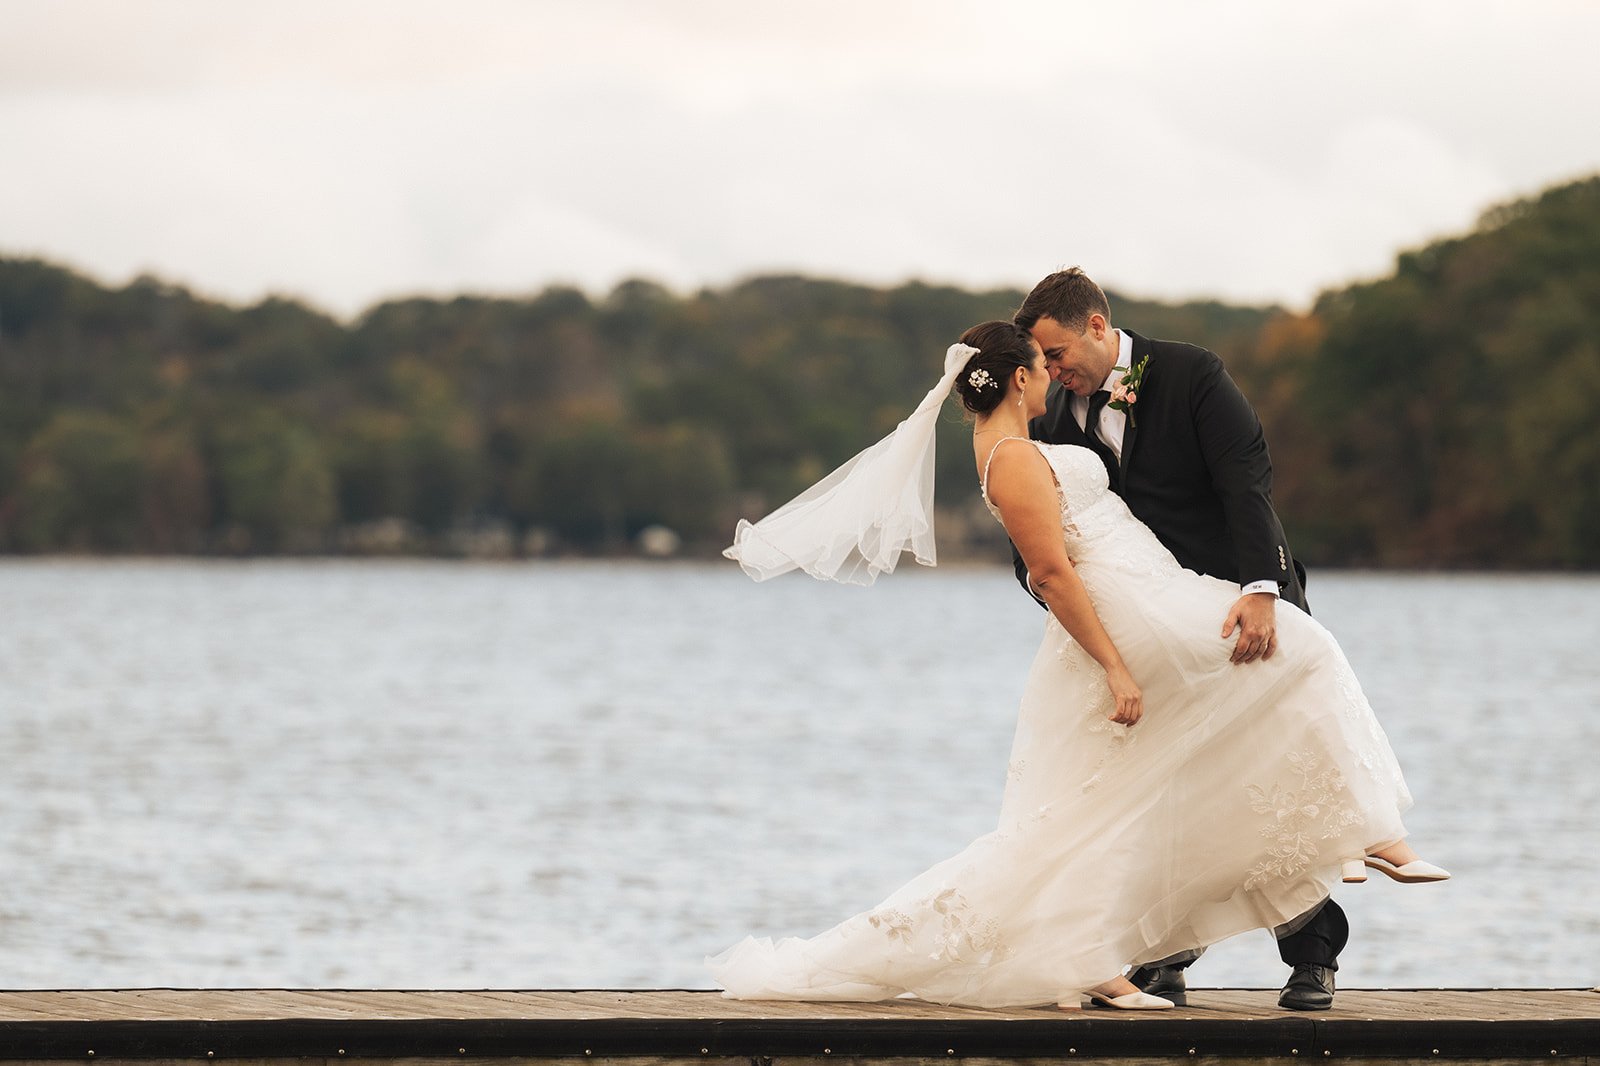 Stone Water at 3 Peaks Marine Wedding | Lauren and Steffen